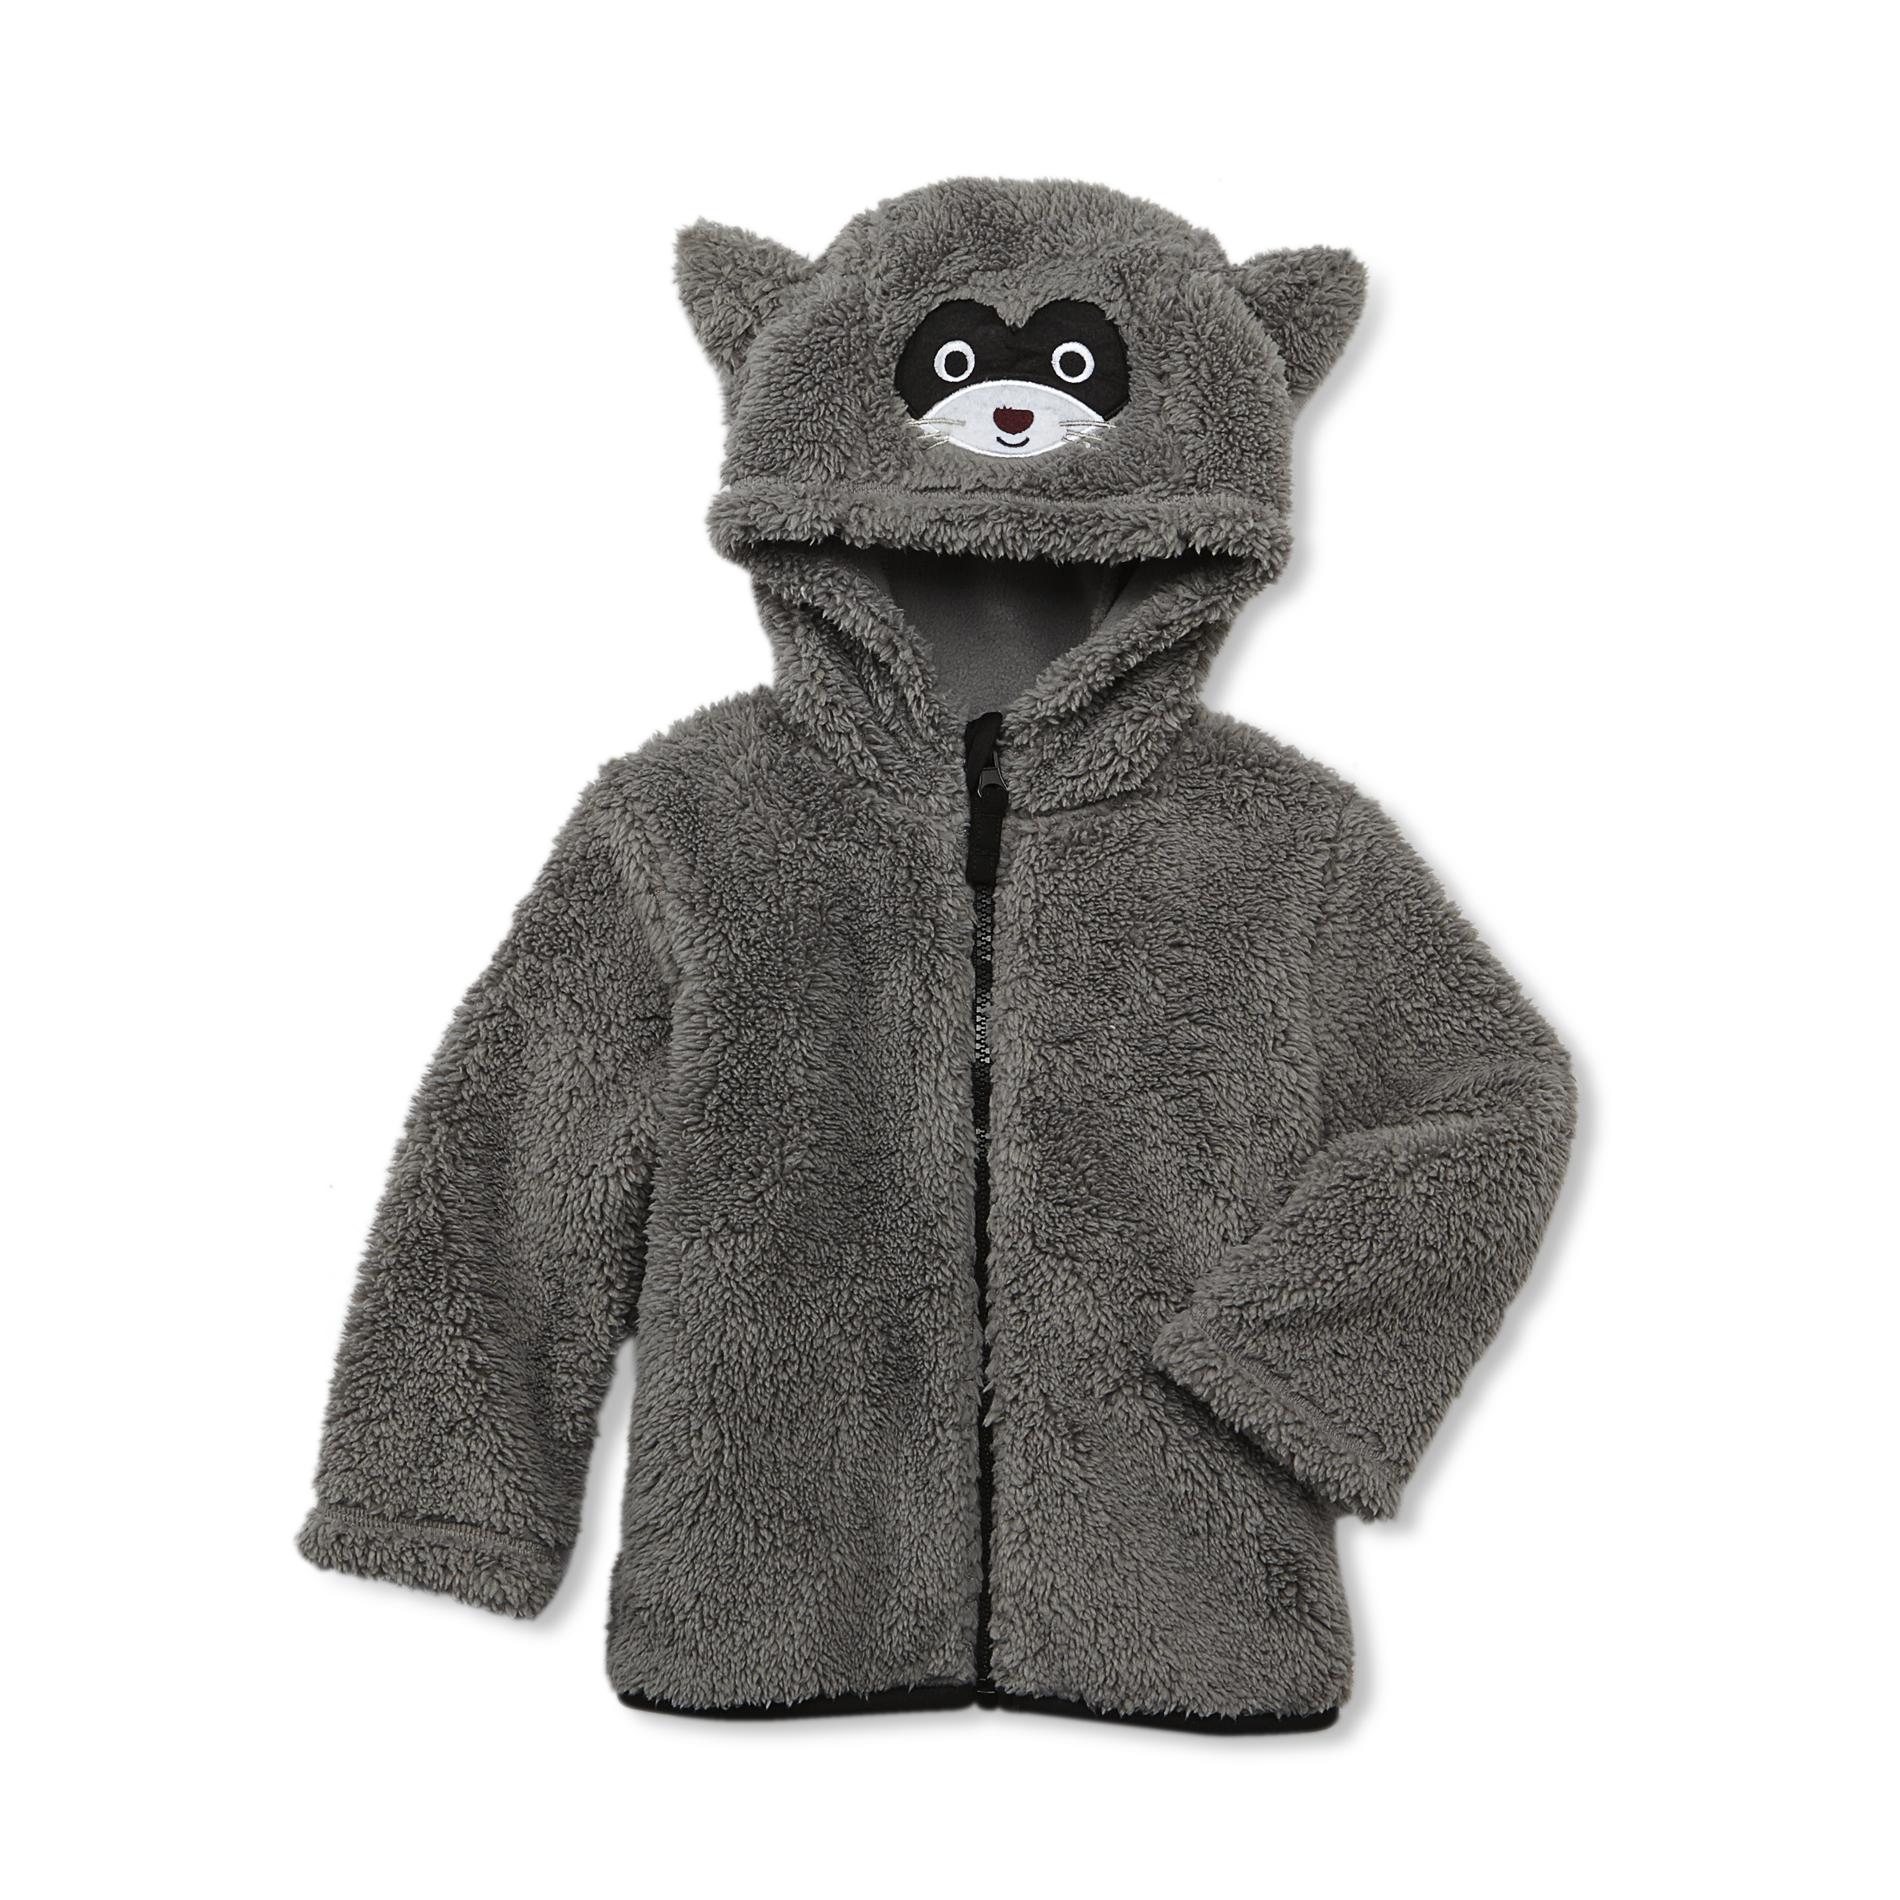 WonderKids Infant & Toddler Boy's Fleece Critter Hoodie Jacket - Raccoon